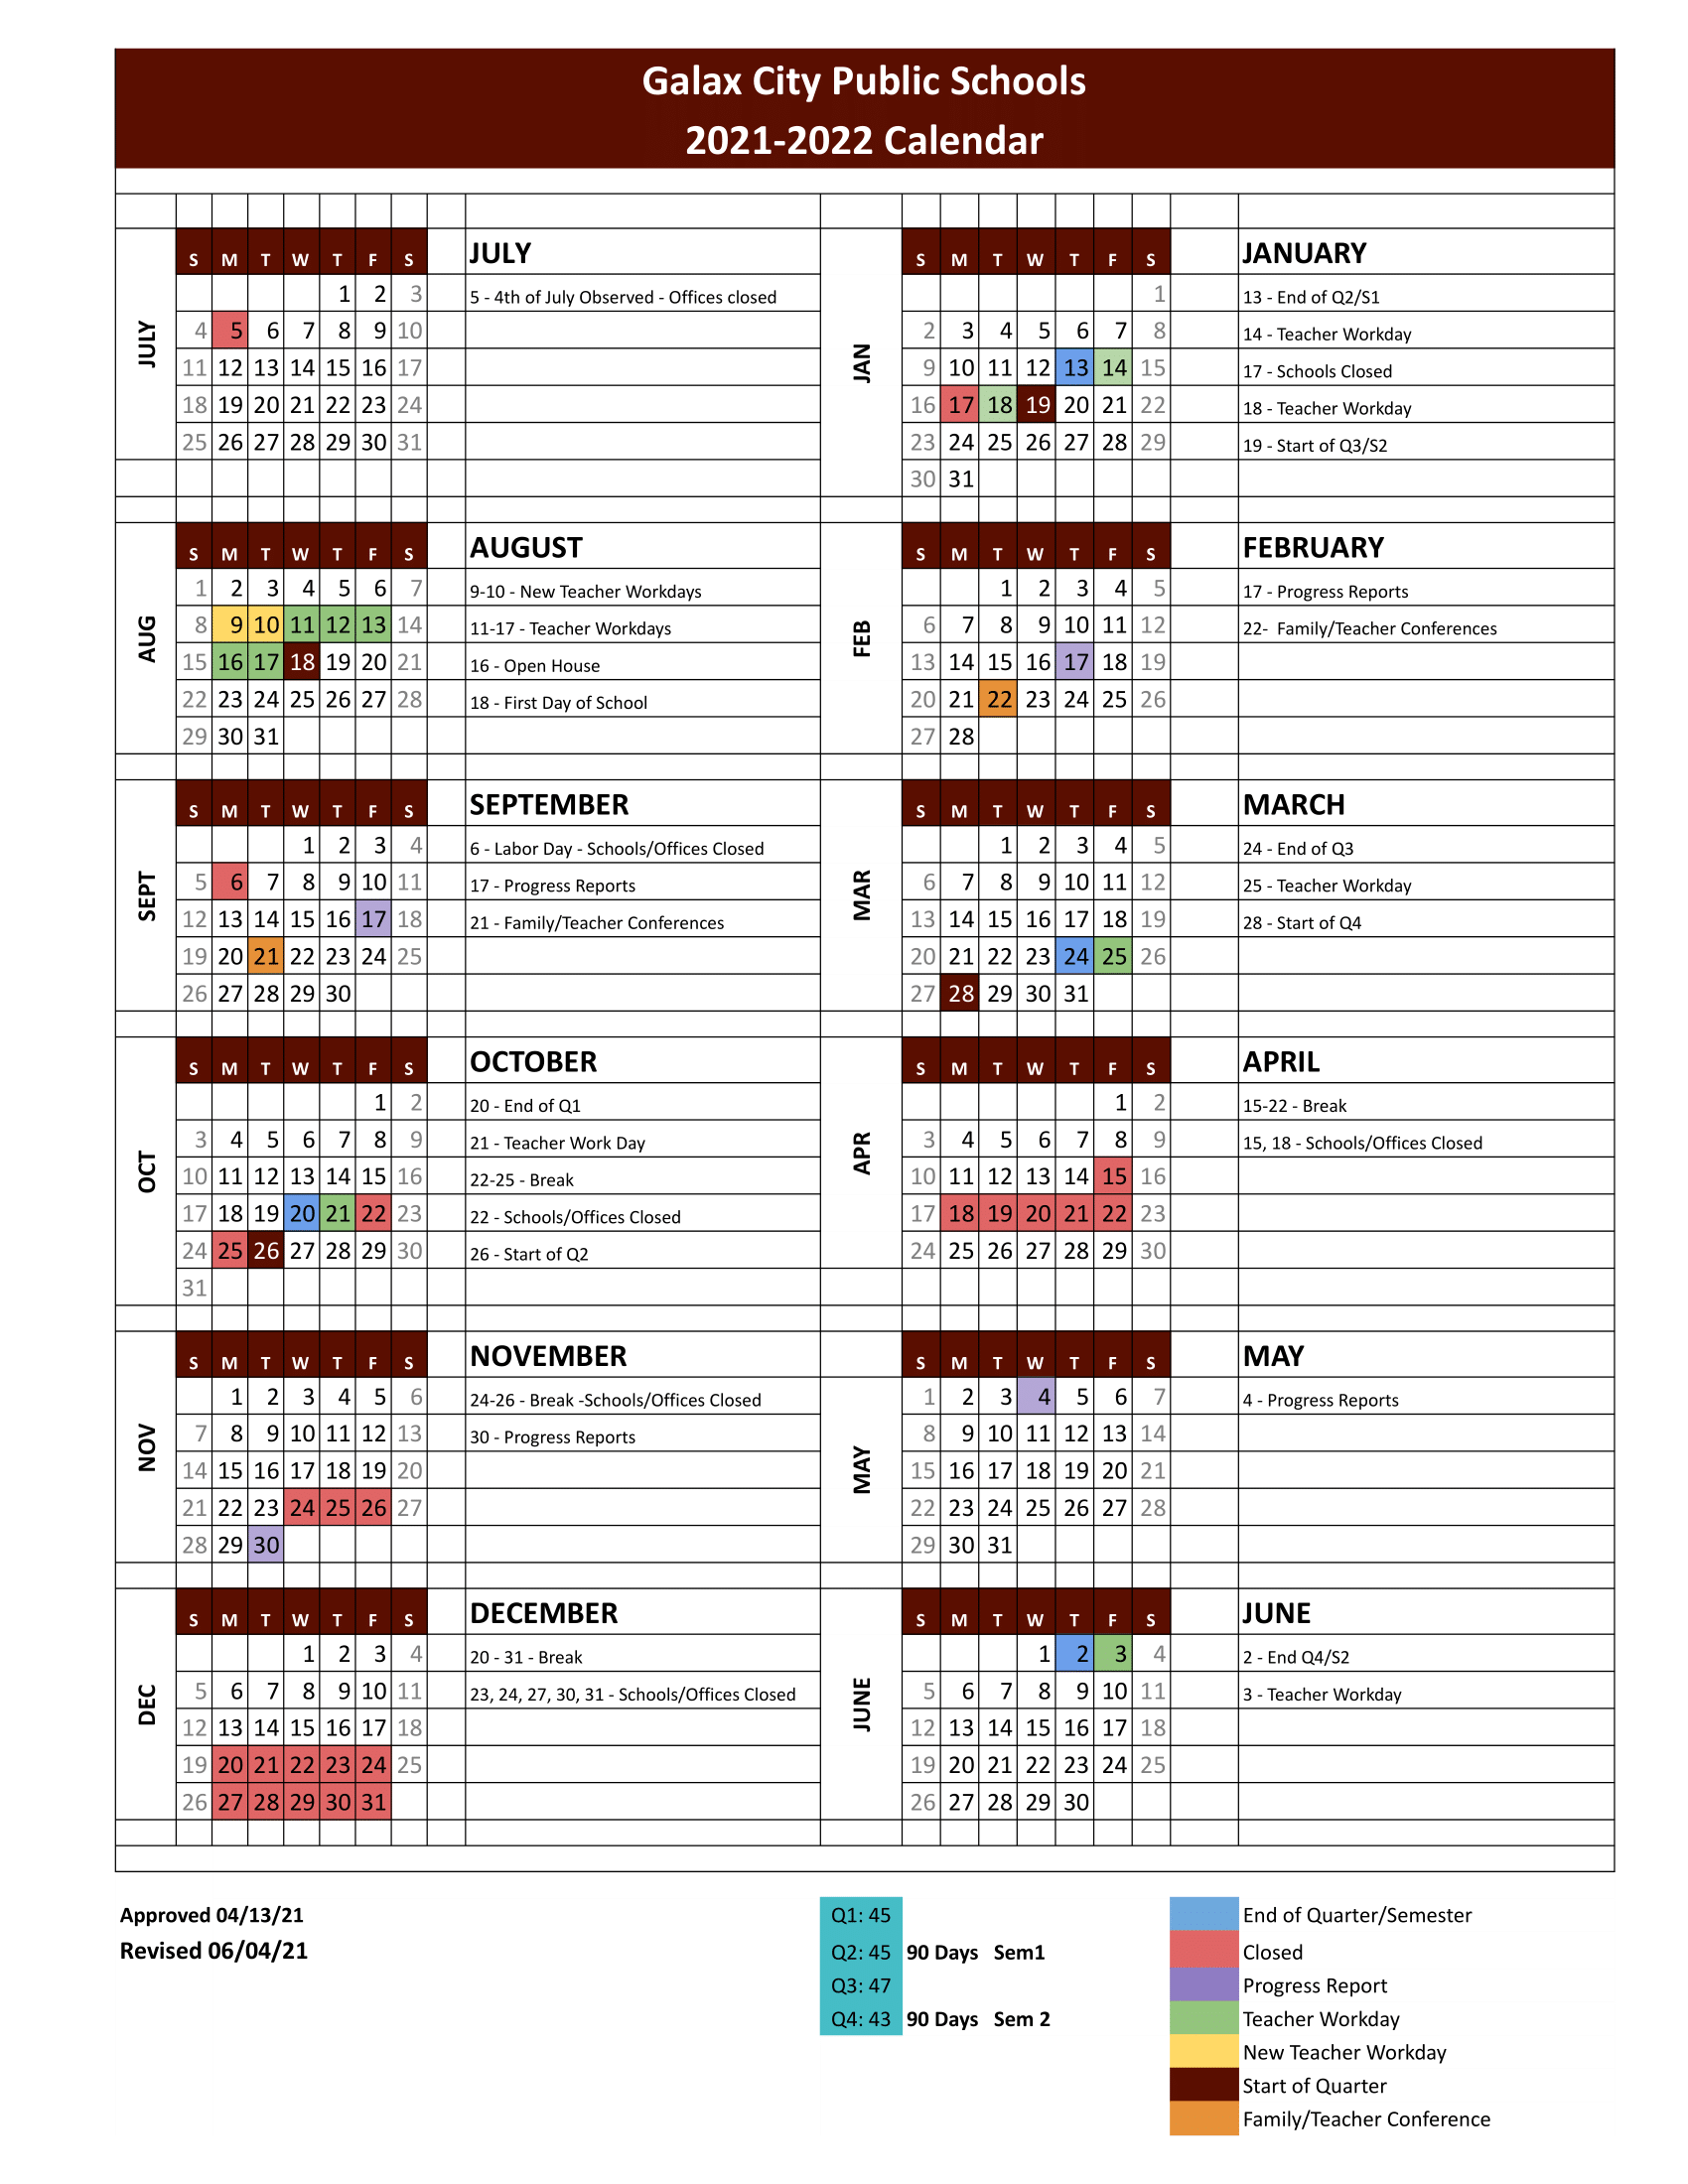 Division Calendar Galax City Public Schools